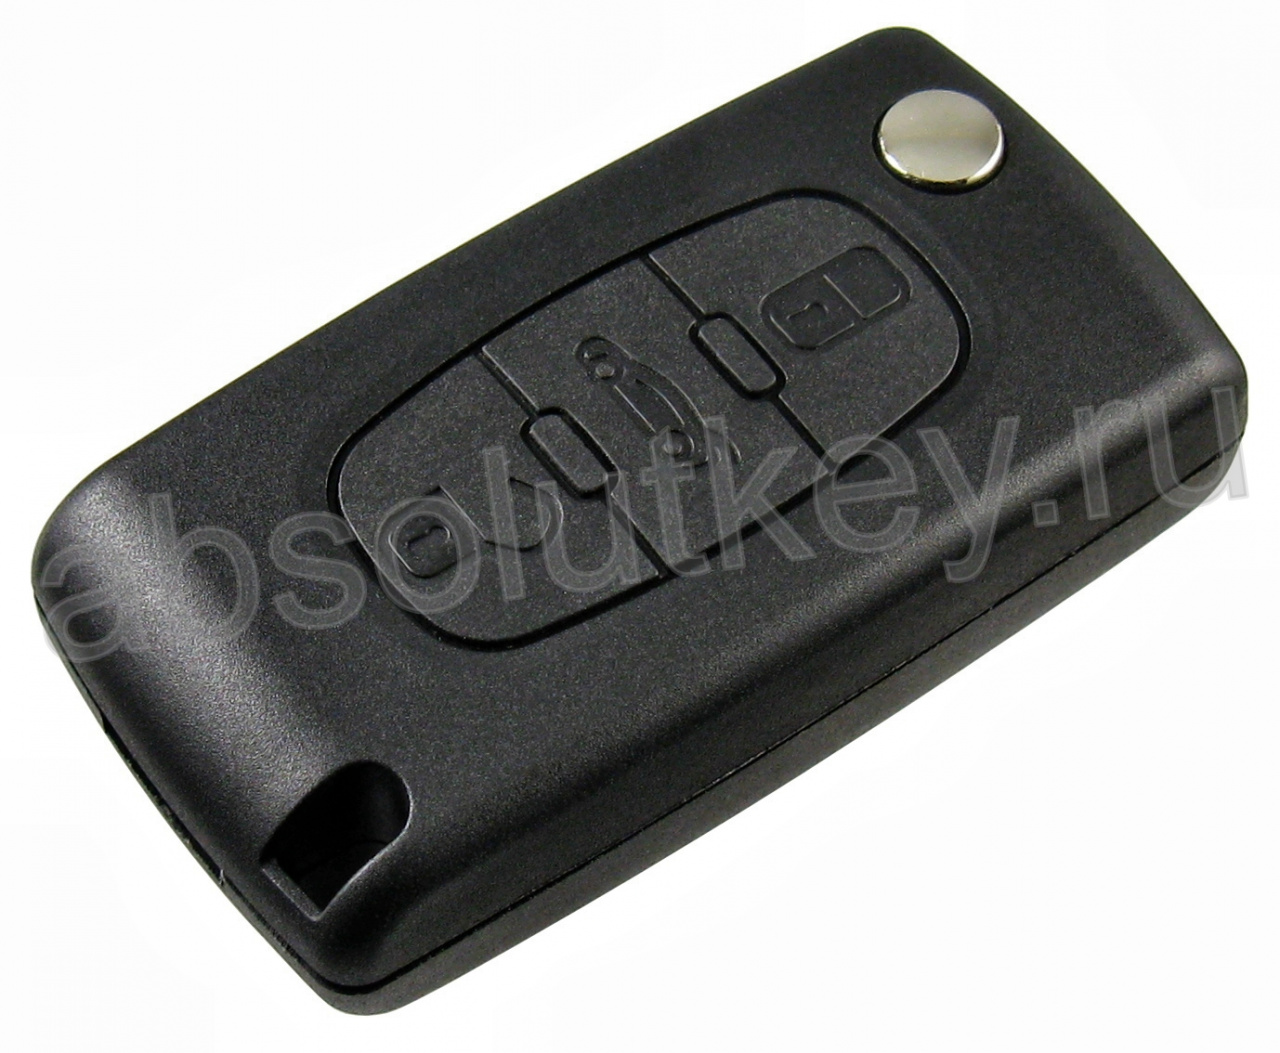 Корпус ключа для Peugeot 3 кн. авто (батарейка на плате)VA2